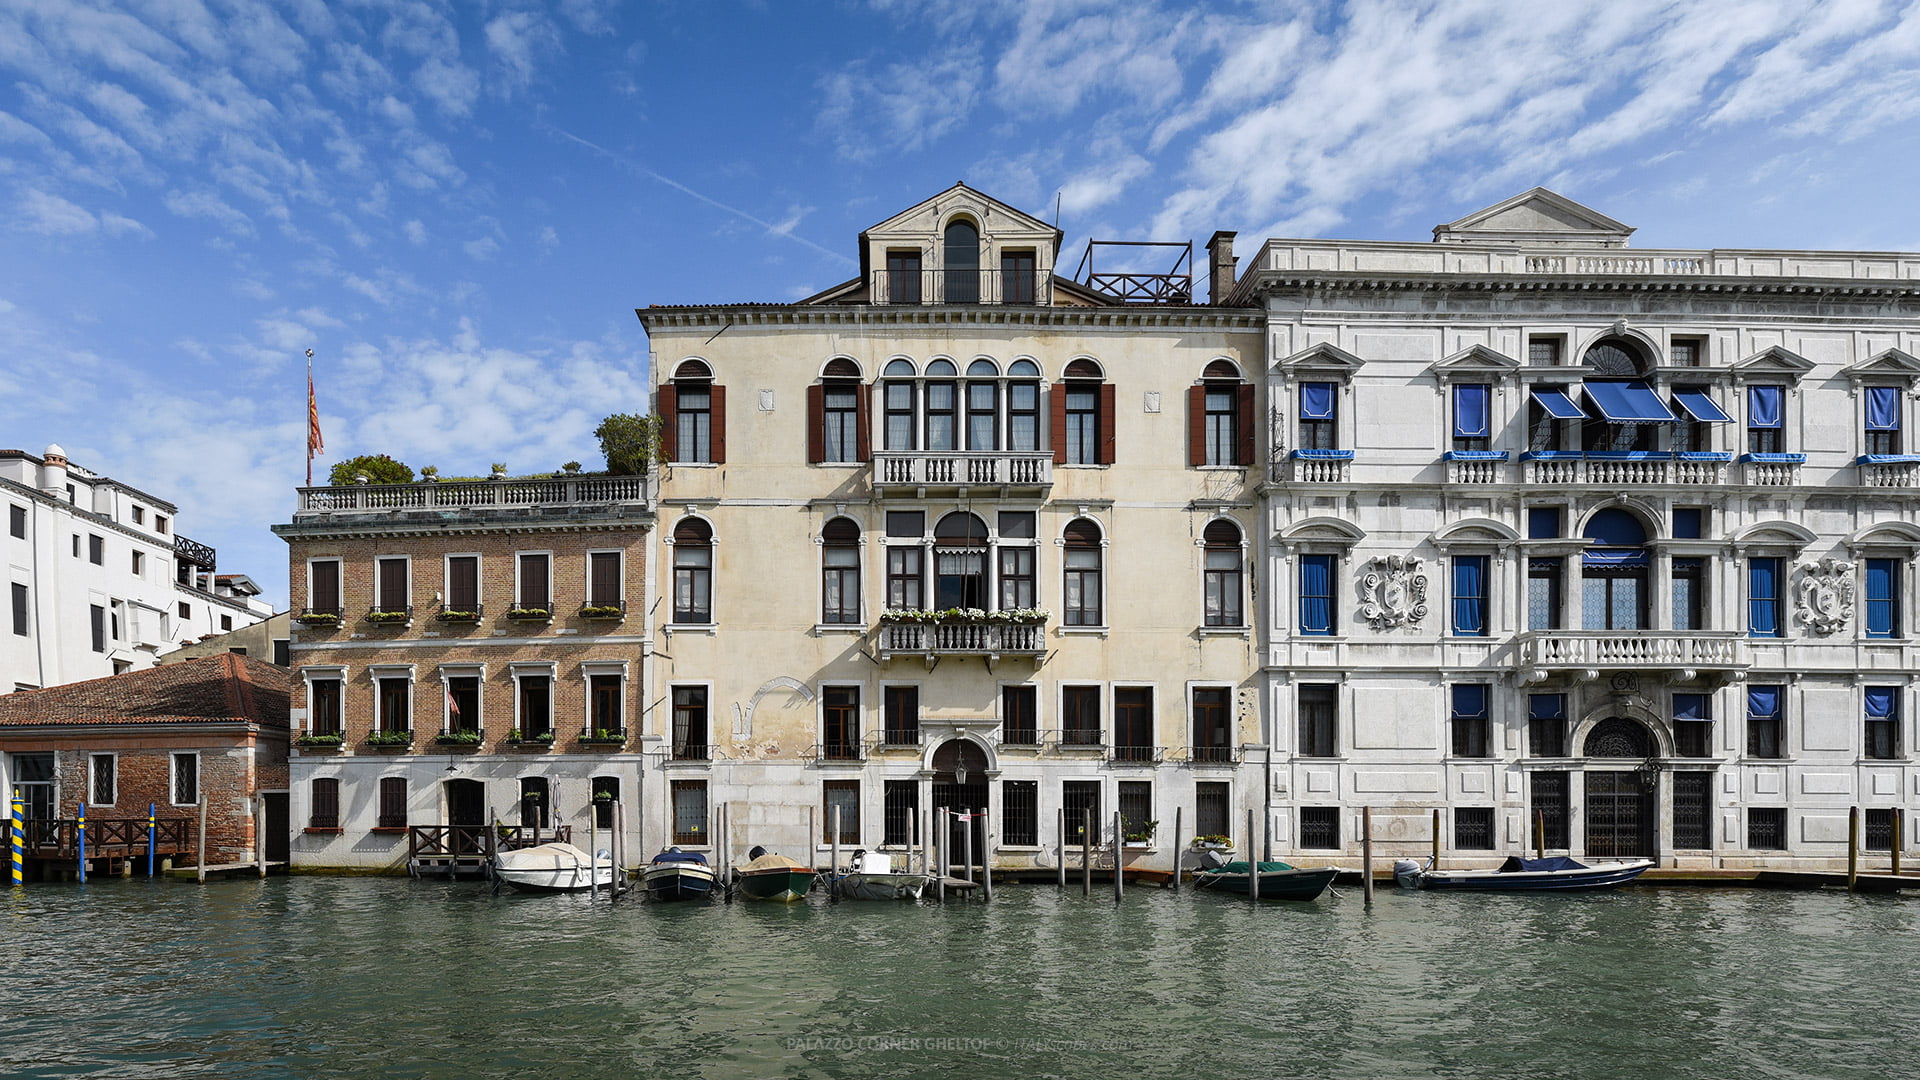 Palazzo Corner Gheltof - Venice